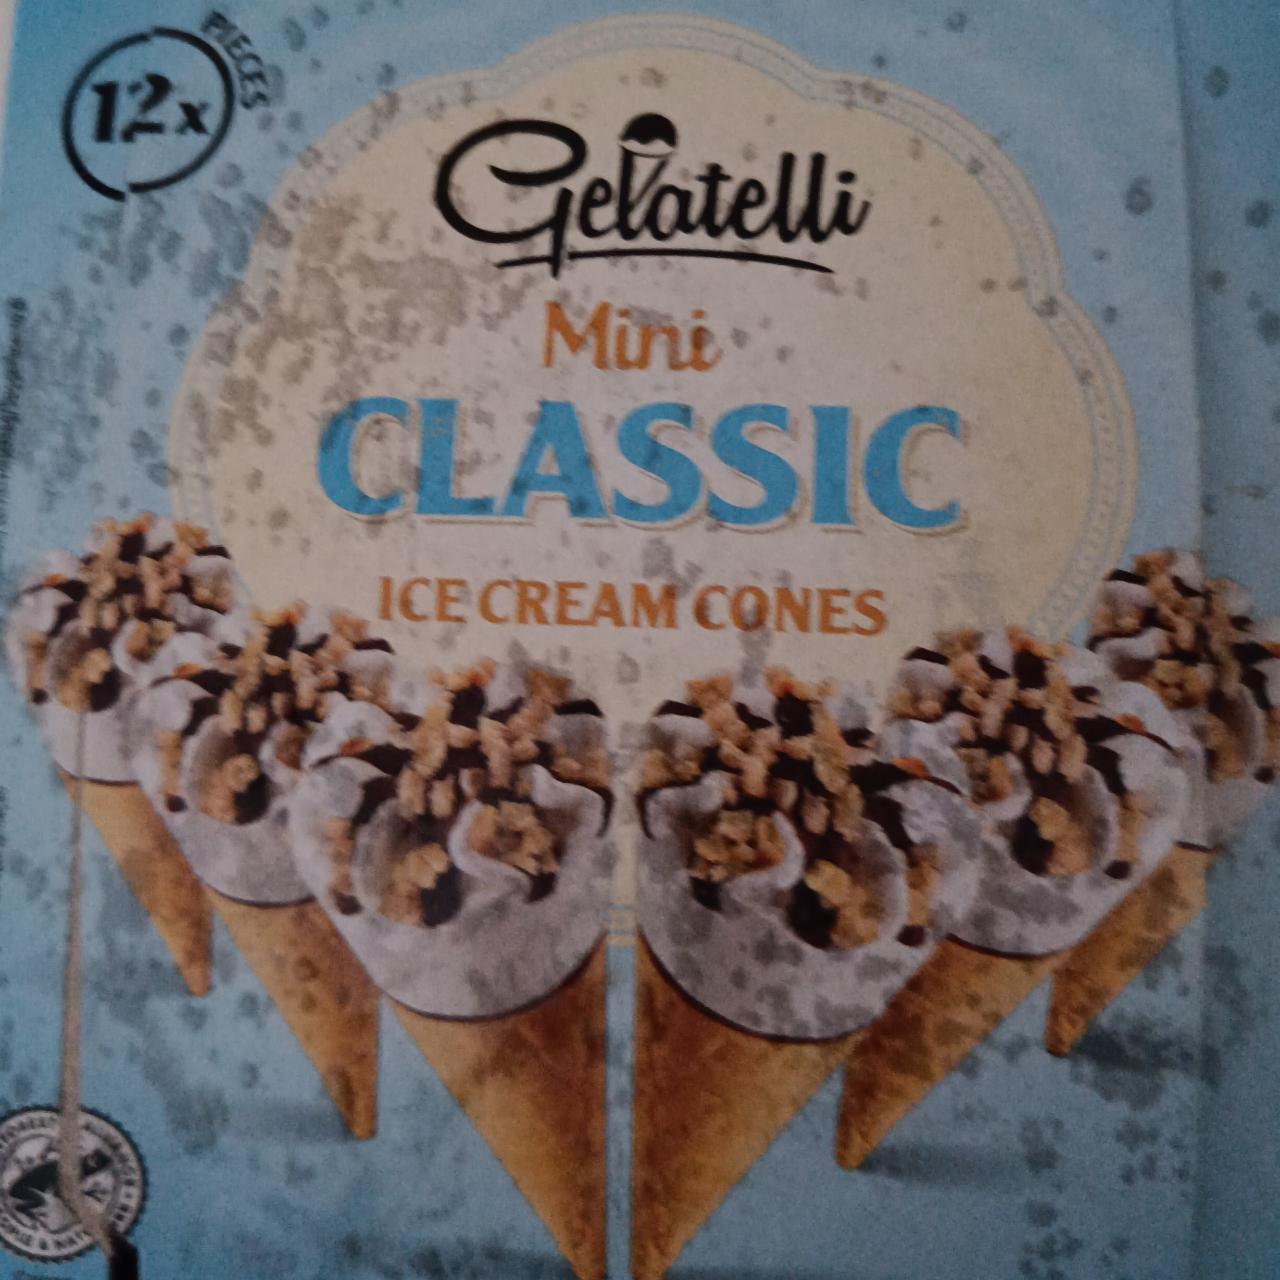 Fotografie - Mini Classic Ice cream cones Gelatelli